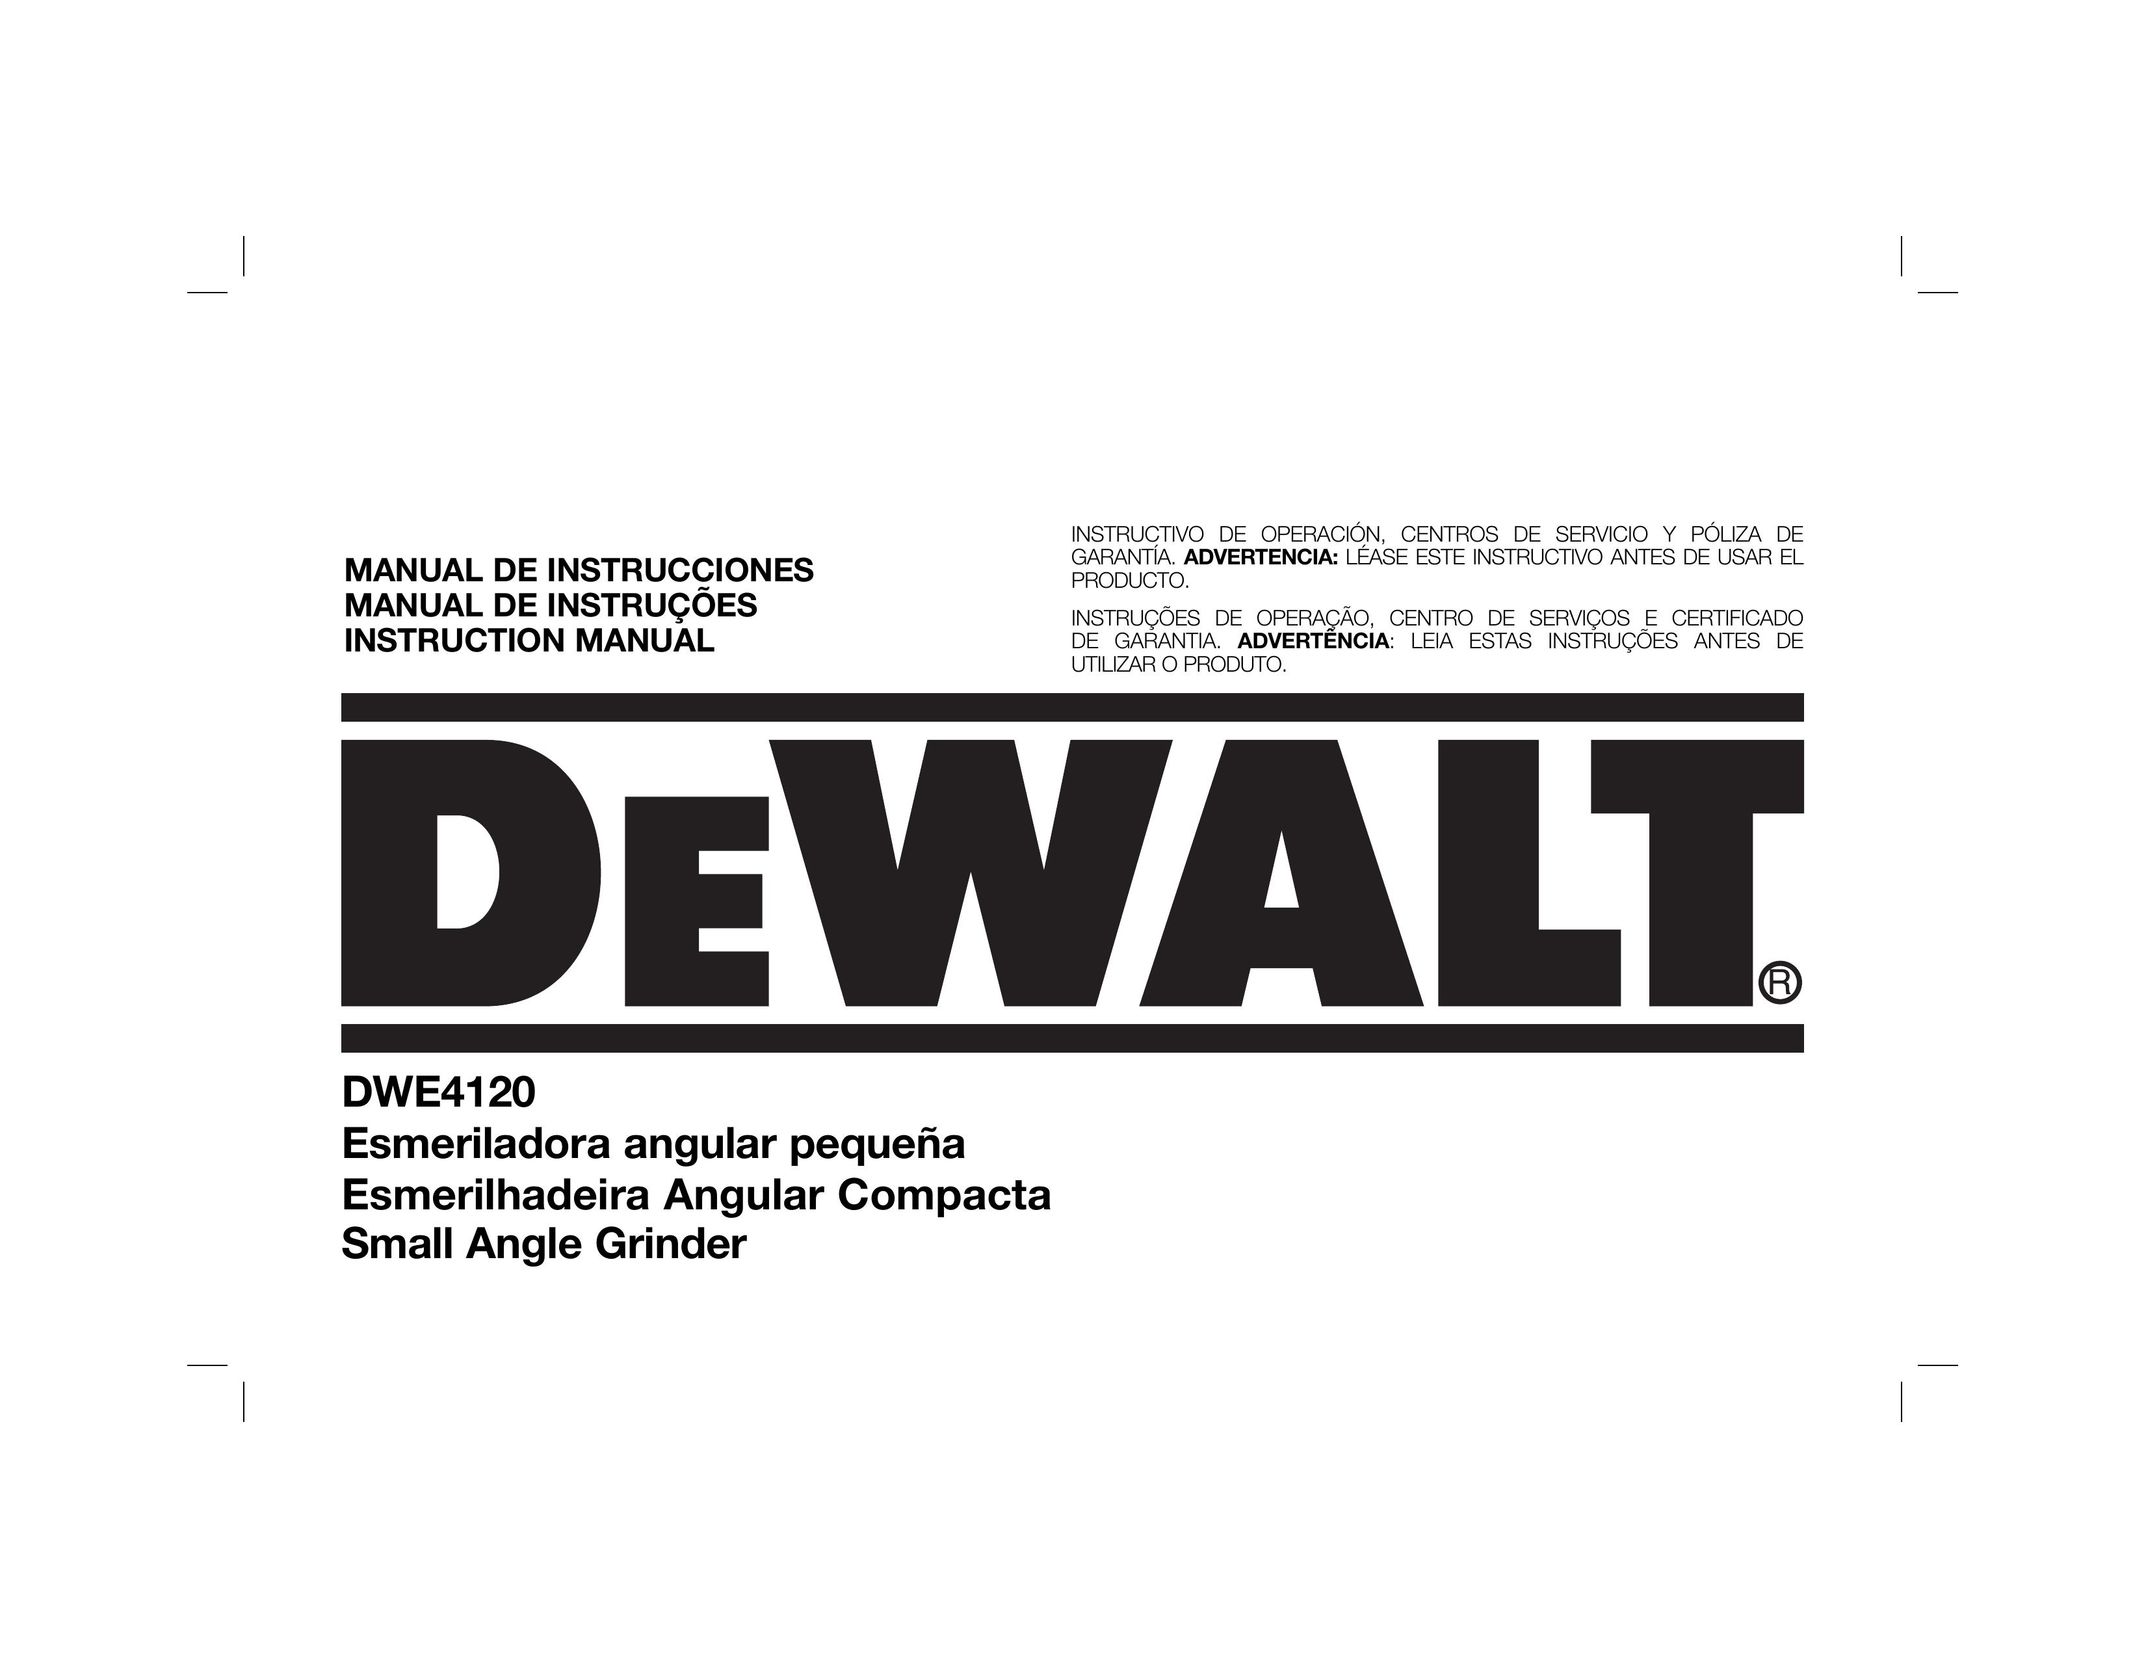 DeWalt DWE4120N Grinder User Manual